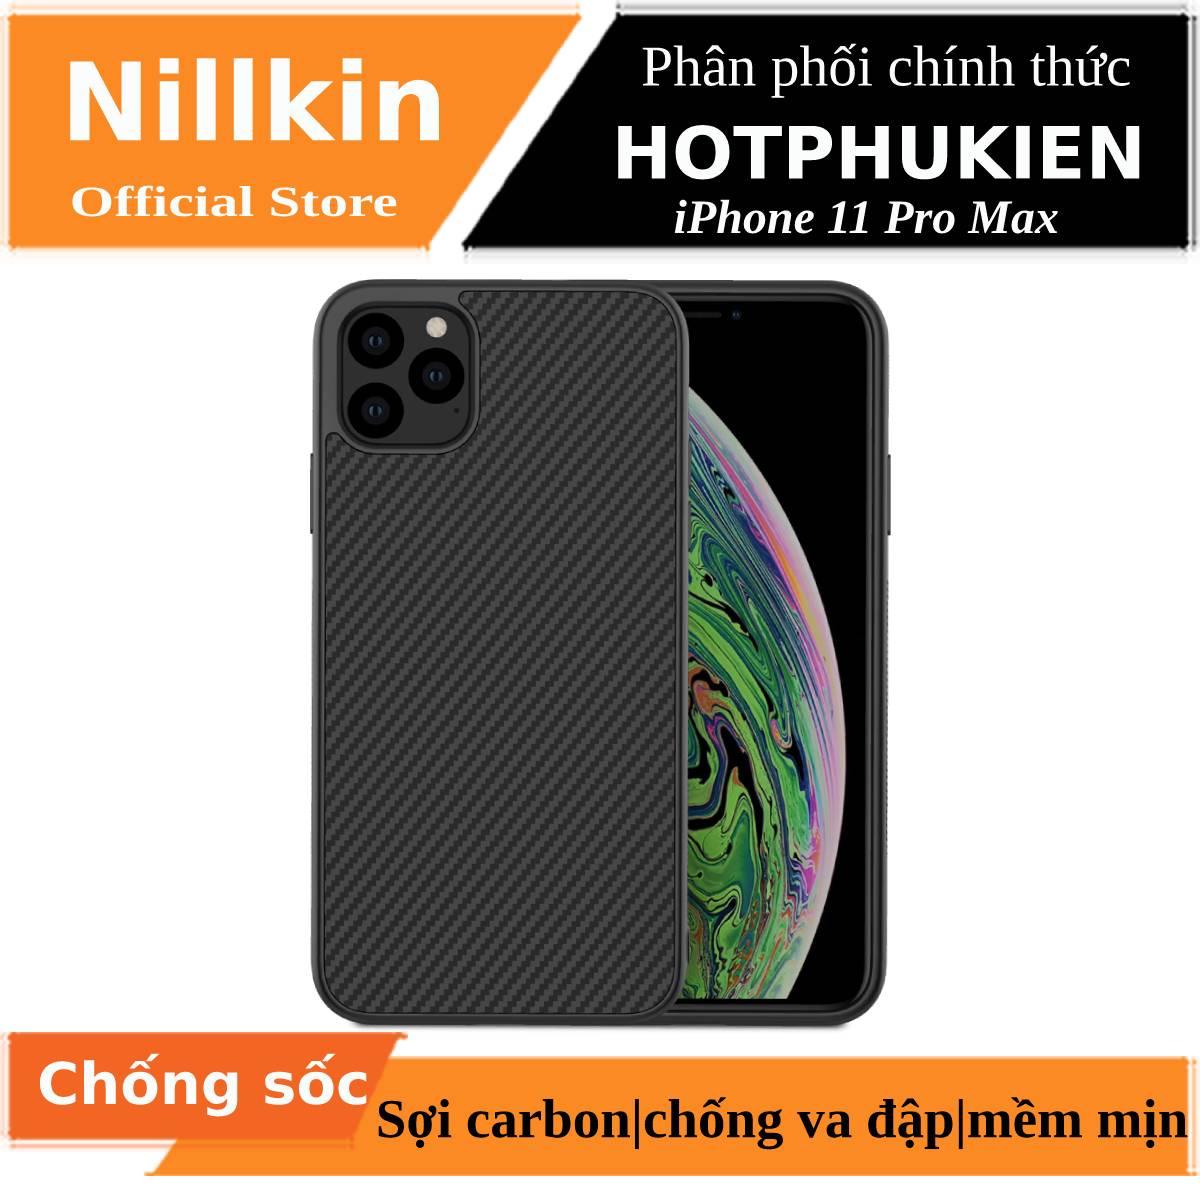 Ốp lưng chống sốc sợi Carbon cho iPhone 11 Pro Max hiệu Nillkin